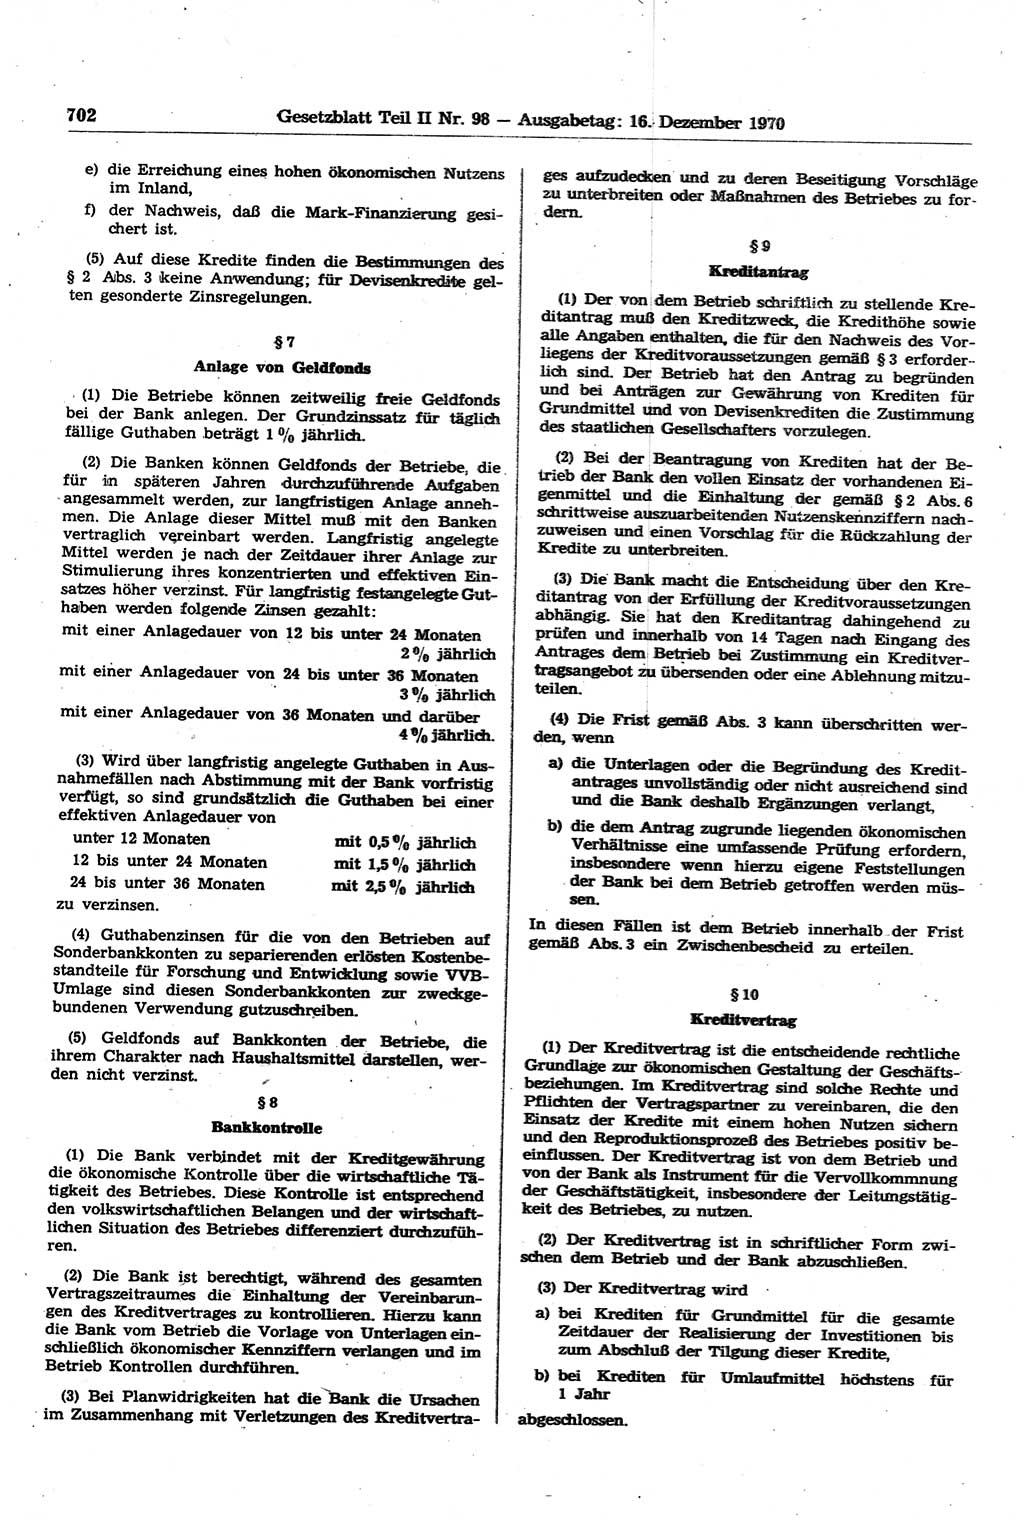 Gesetzblatt (GBl.) der Deutschen Demokratischen Republik (DDR) Teil ⅠⅠ 1970, Seite 702 (GBl. DDR ⅠⅠ 1970, S. 702)